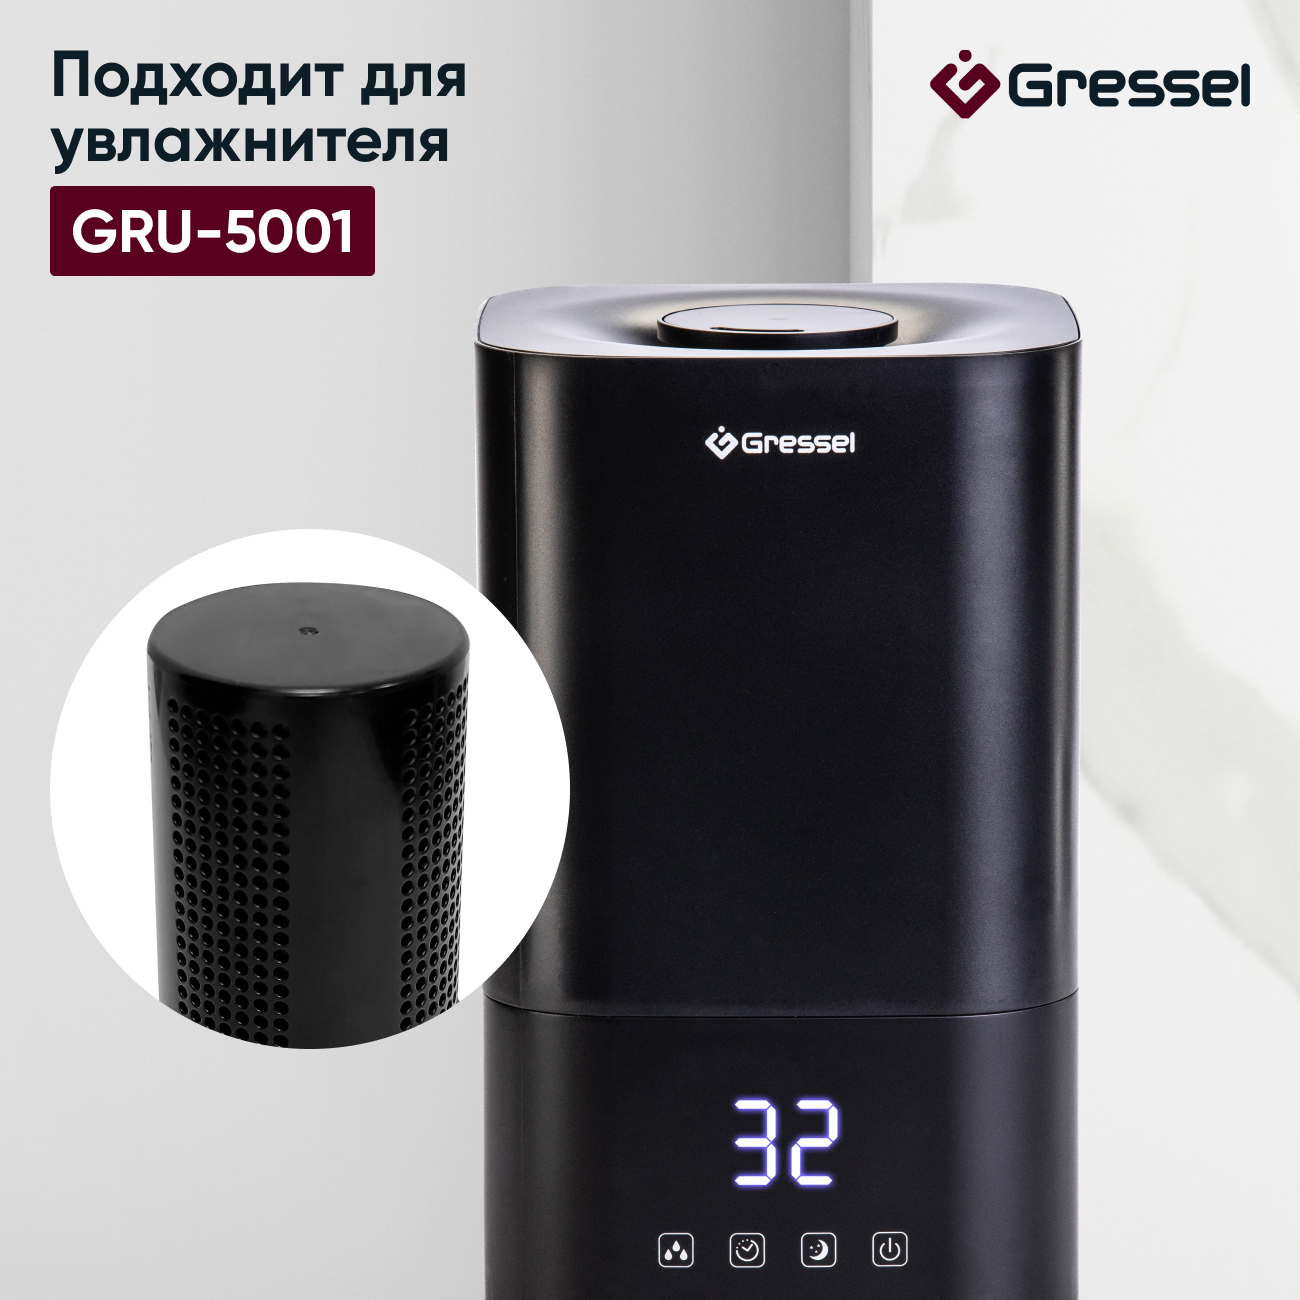 Фильтр увлажнителя воздуха Gressel G-5001 для модели GRU-5001 фильтр картридж для ультразвукового увлажнителя ballu